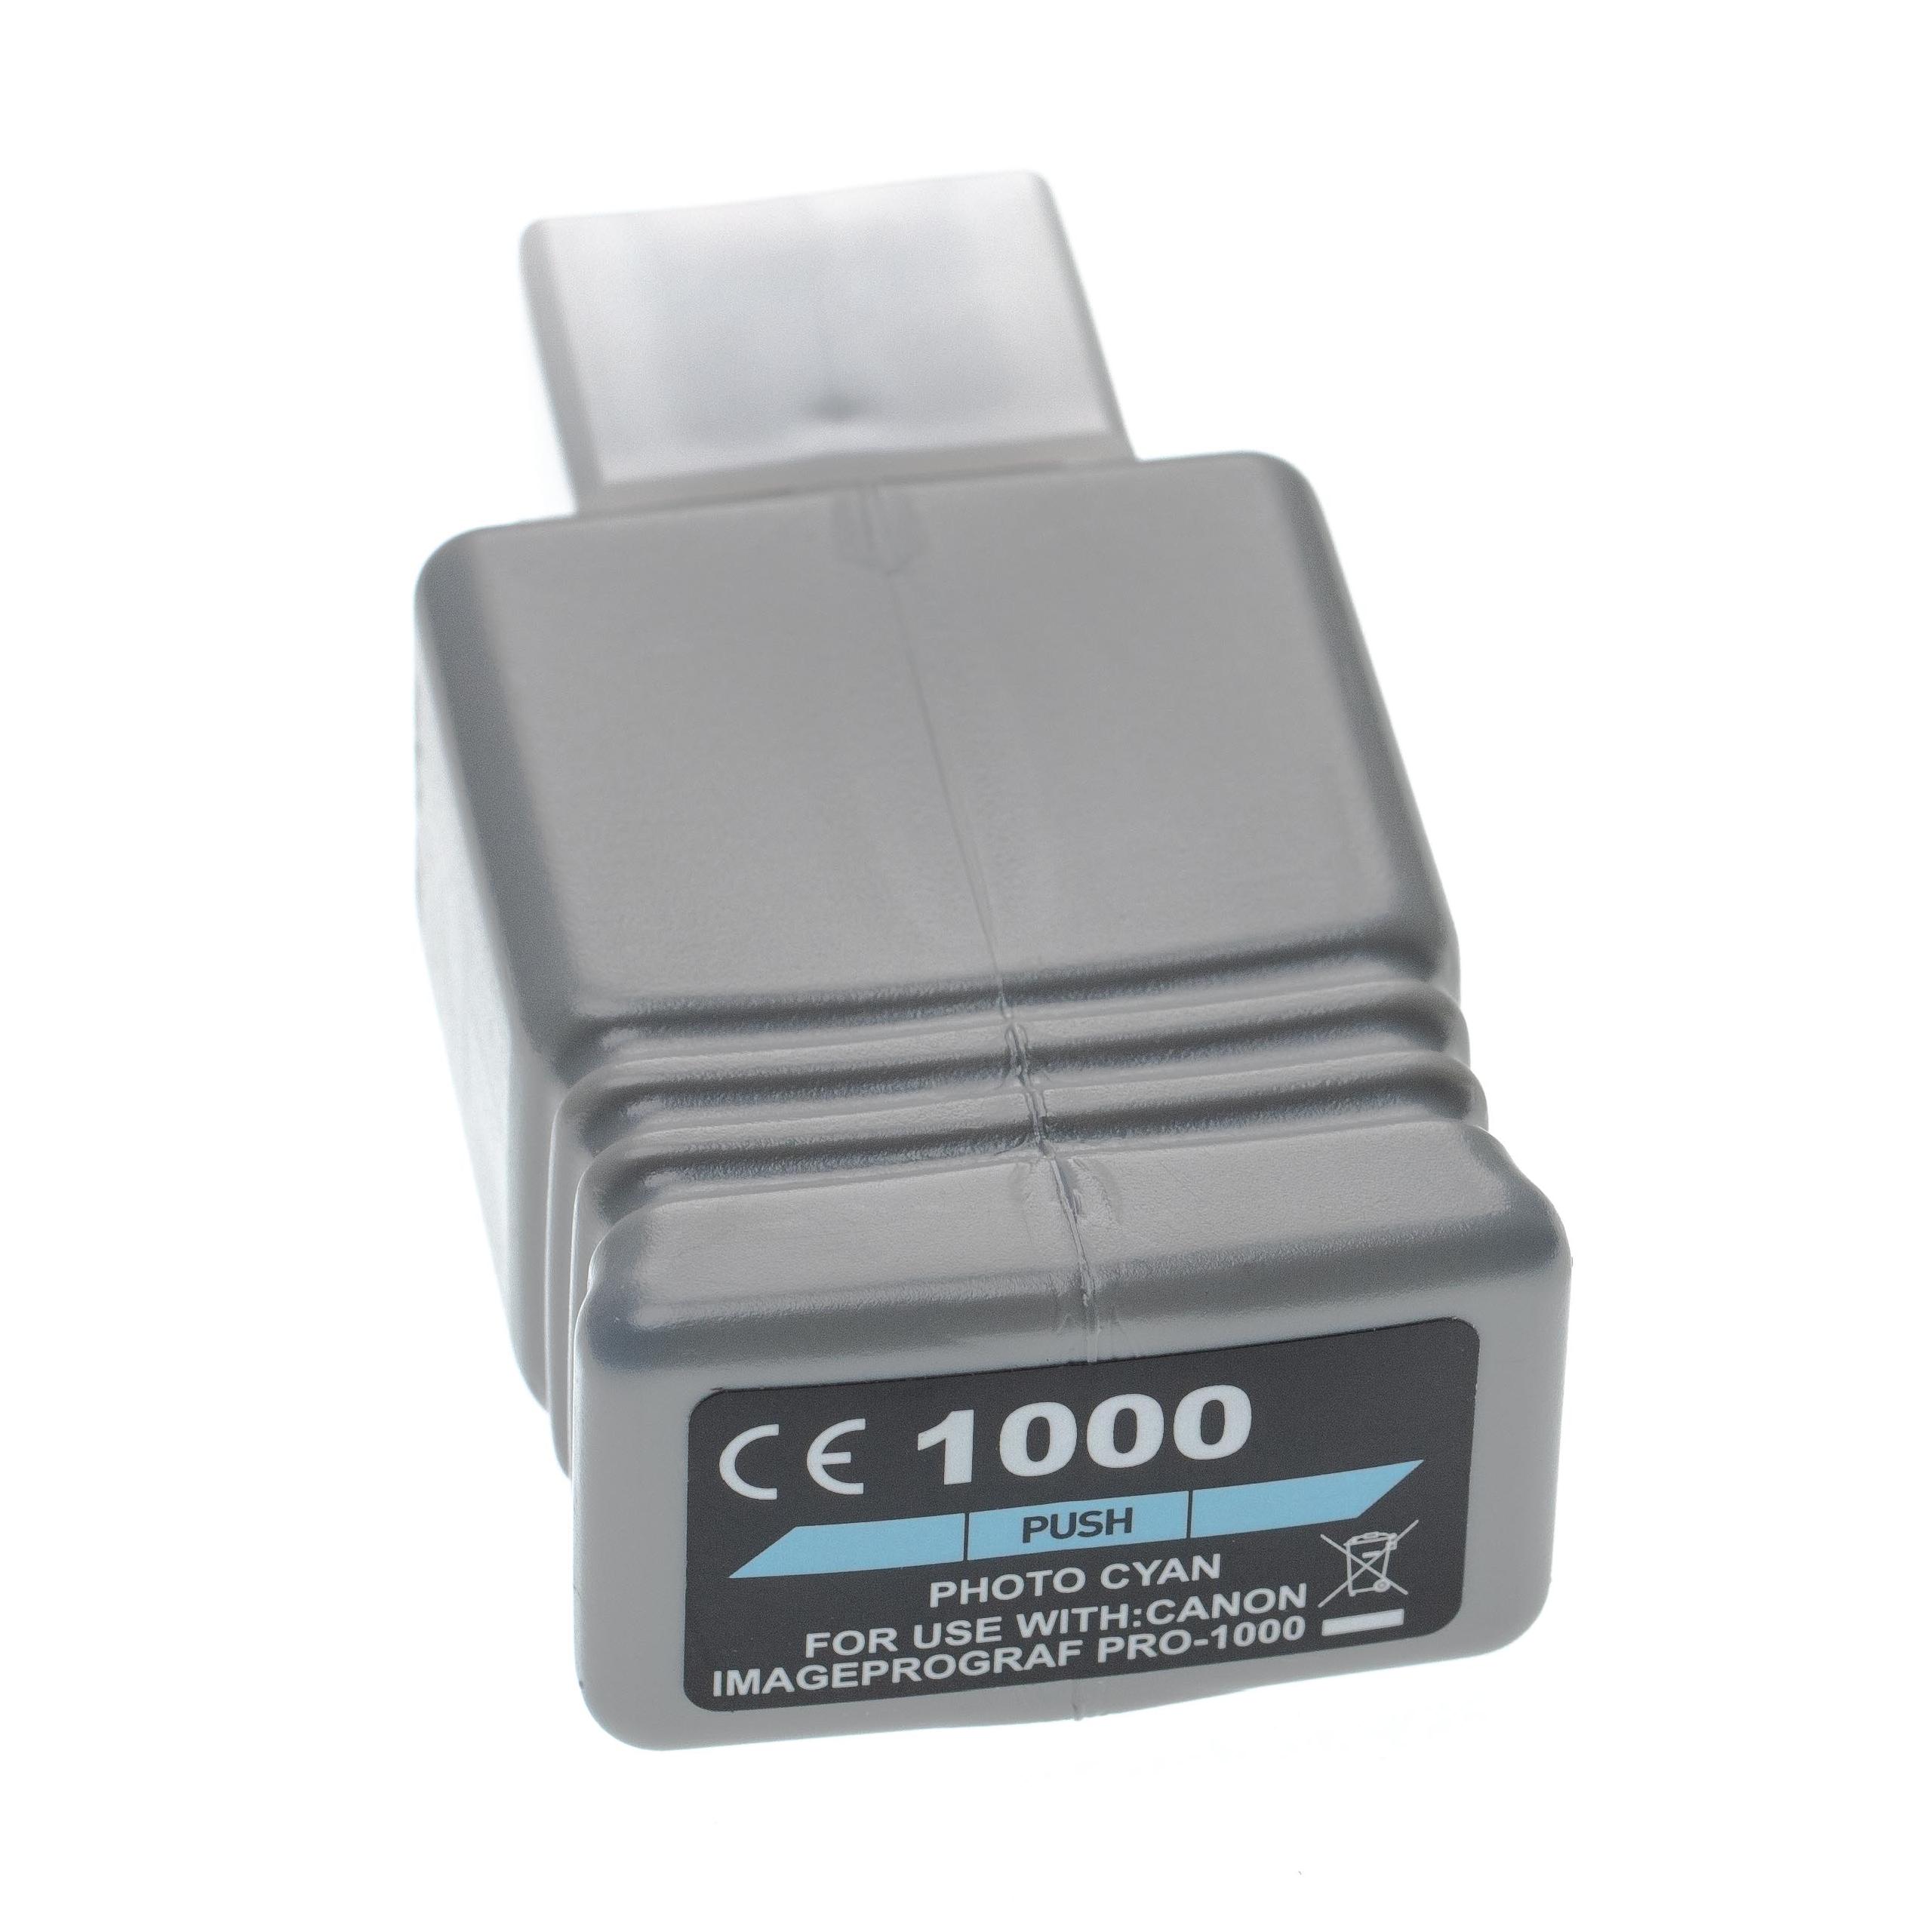 Cartuccia inchiostro sostituisce Canon PFI-1000PC, PFI-1000 PC per stampante - photo cyan, 80 ml + chip